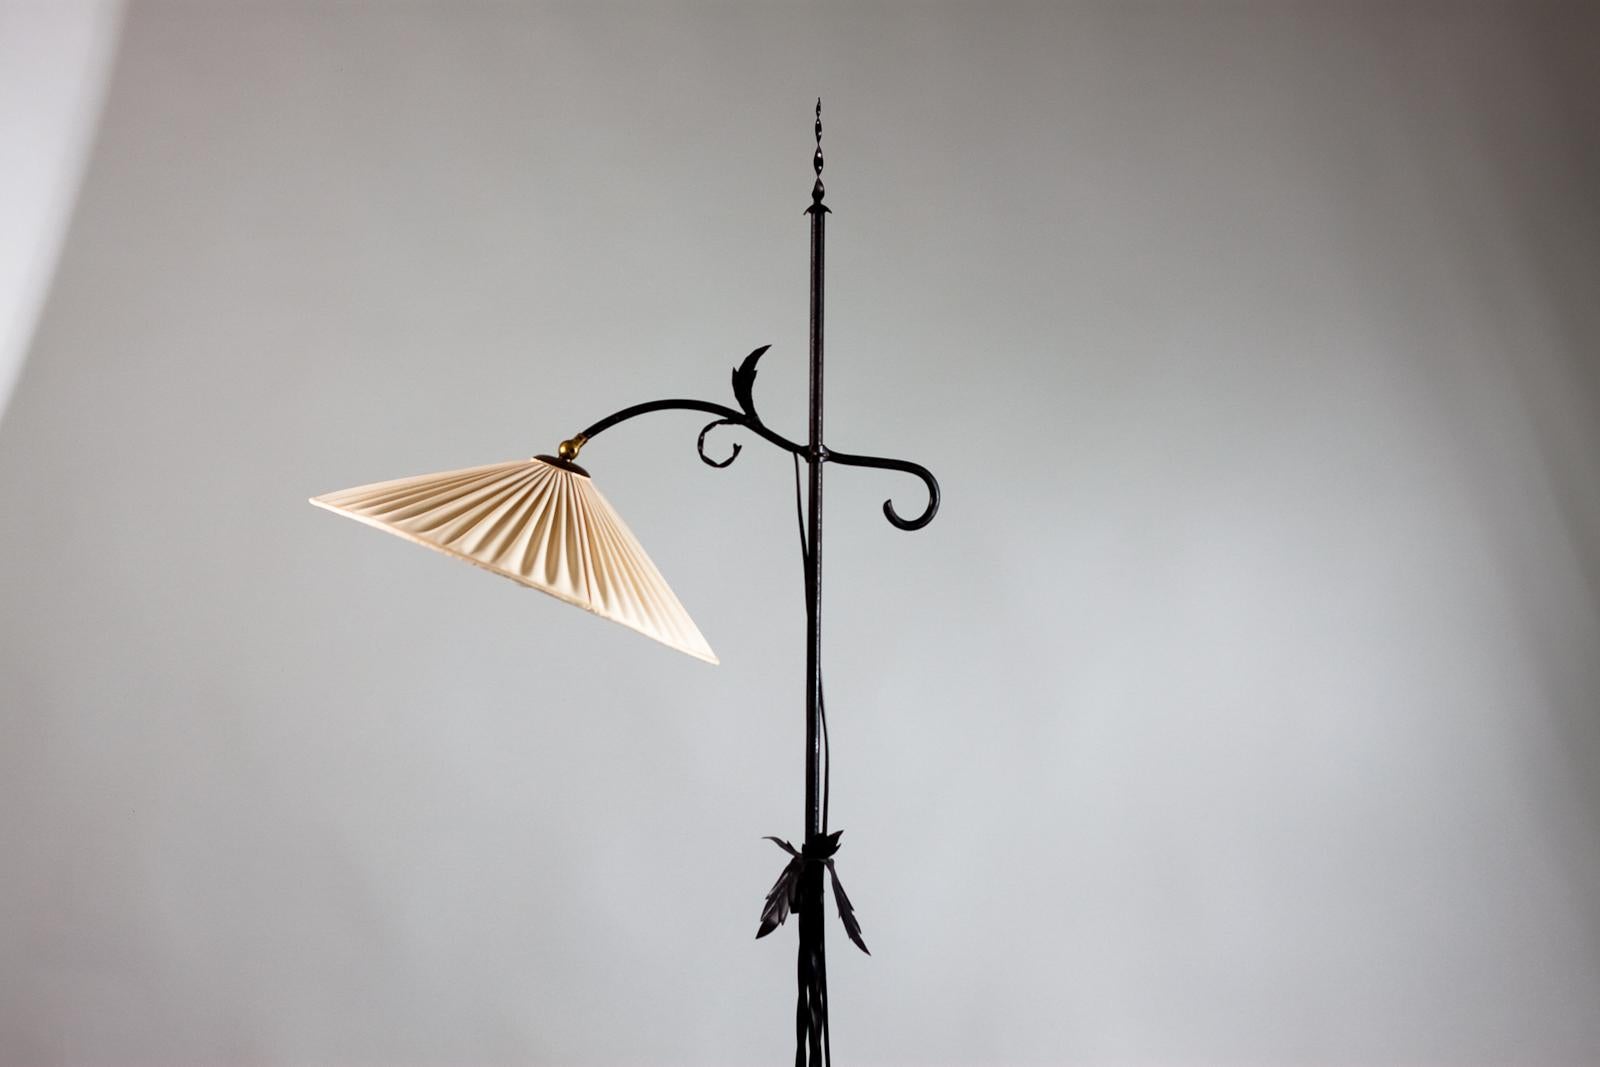 Schöne Stehleuchte aus Schmiedeeisen von Antti Hakkarainen für Taidetakomo Hakkarainen aus den 1930er Jahren, Finnland. Die Stehleuchte kann in der Höhe verstellt werden. 
Die Schönheit liegt in den Details der Lampe. Die Lampe hat einen originalen